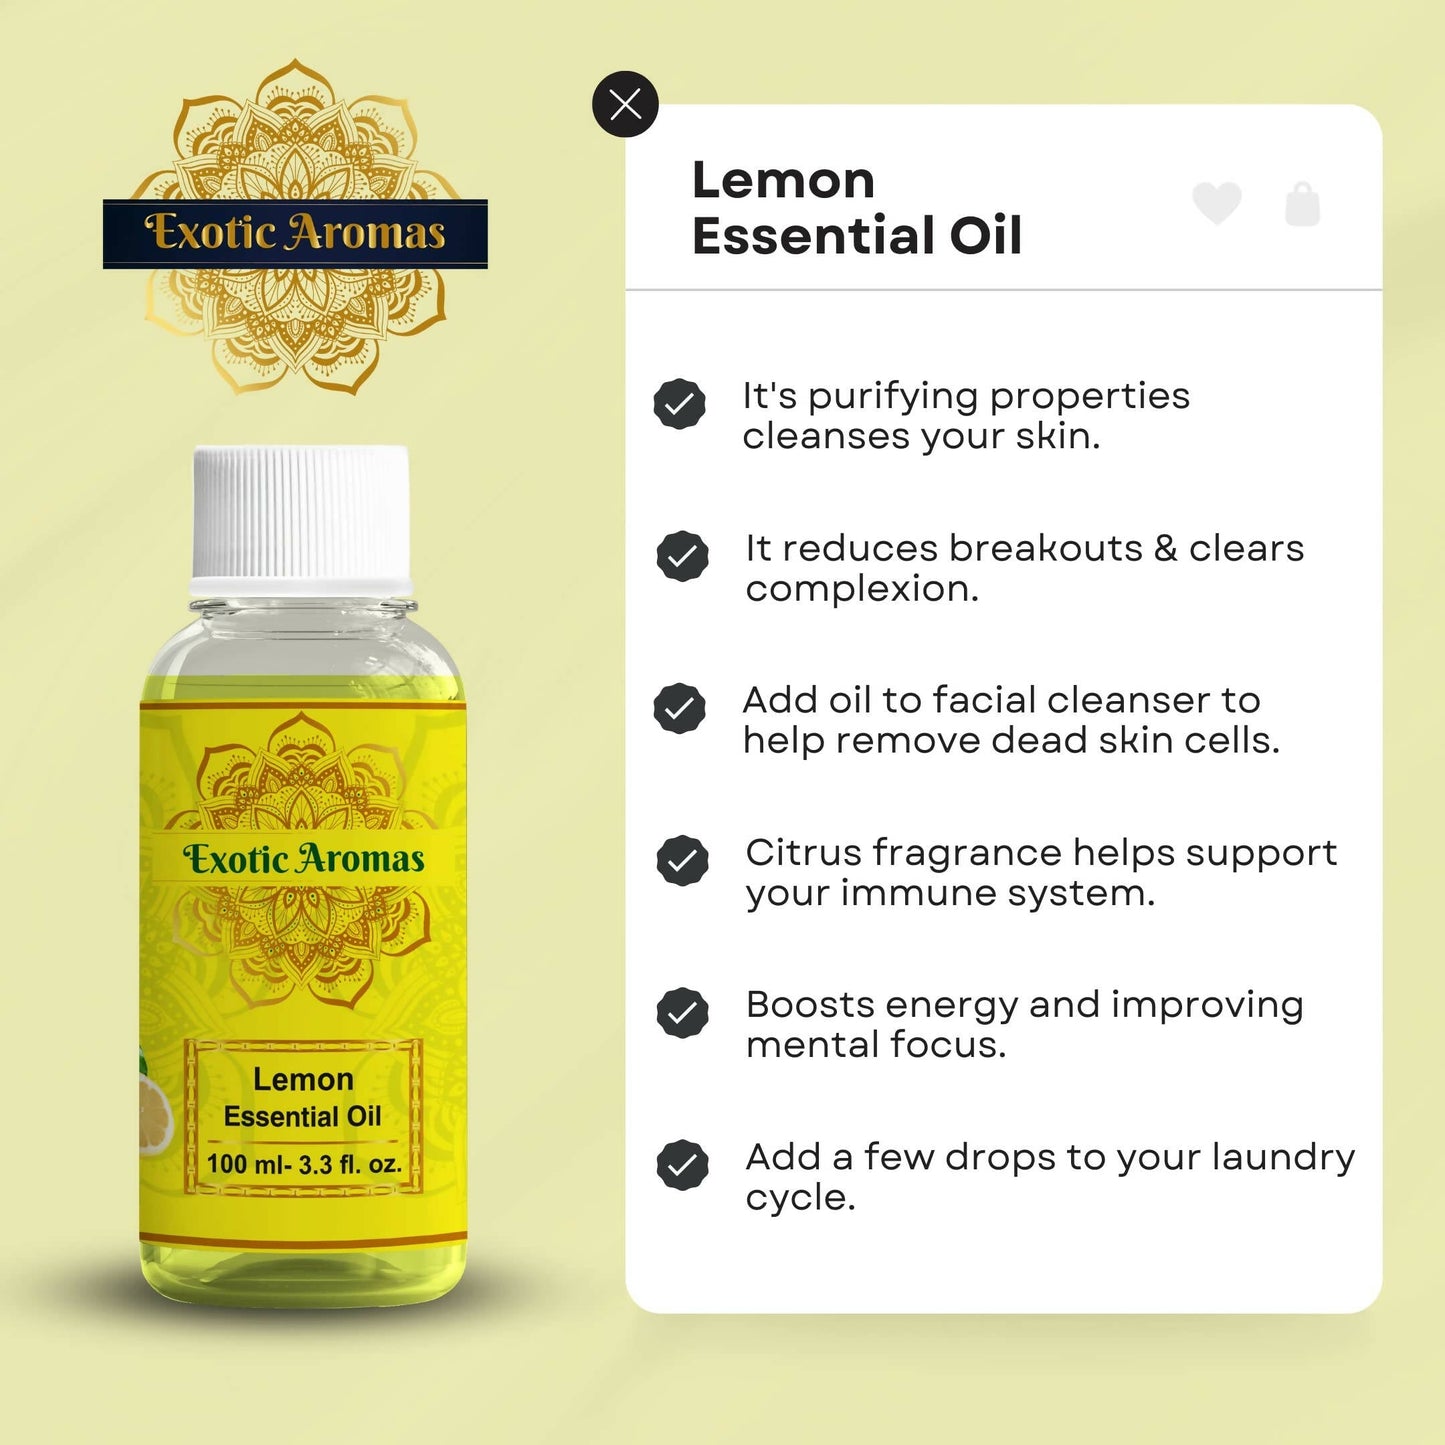 Exotic Aromas Lemon Essential Oil